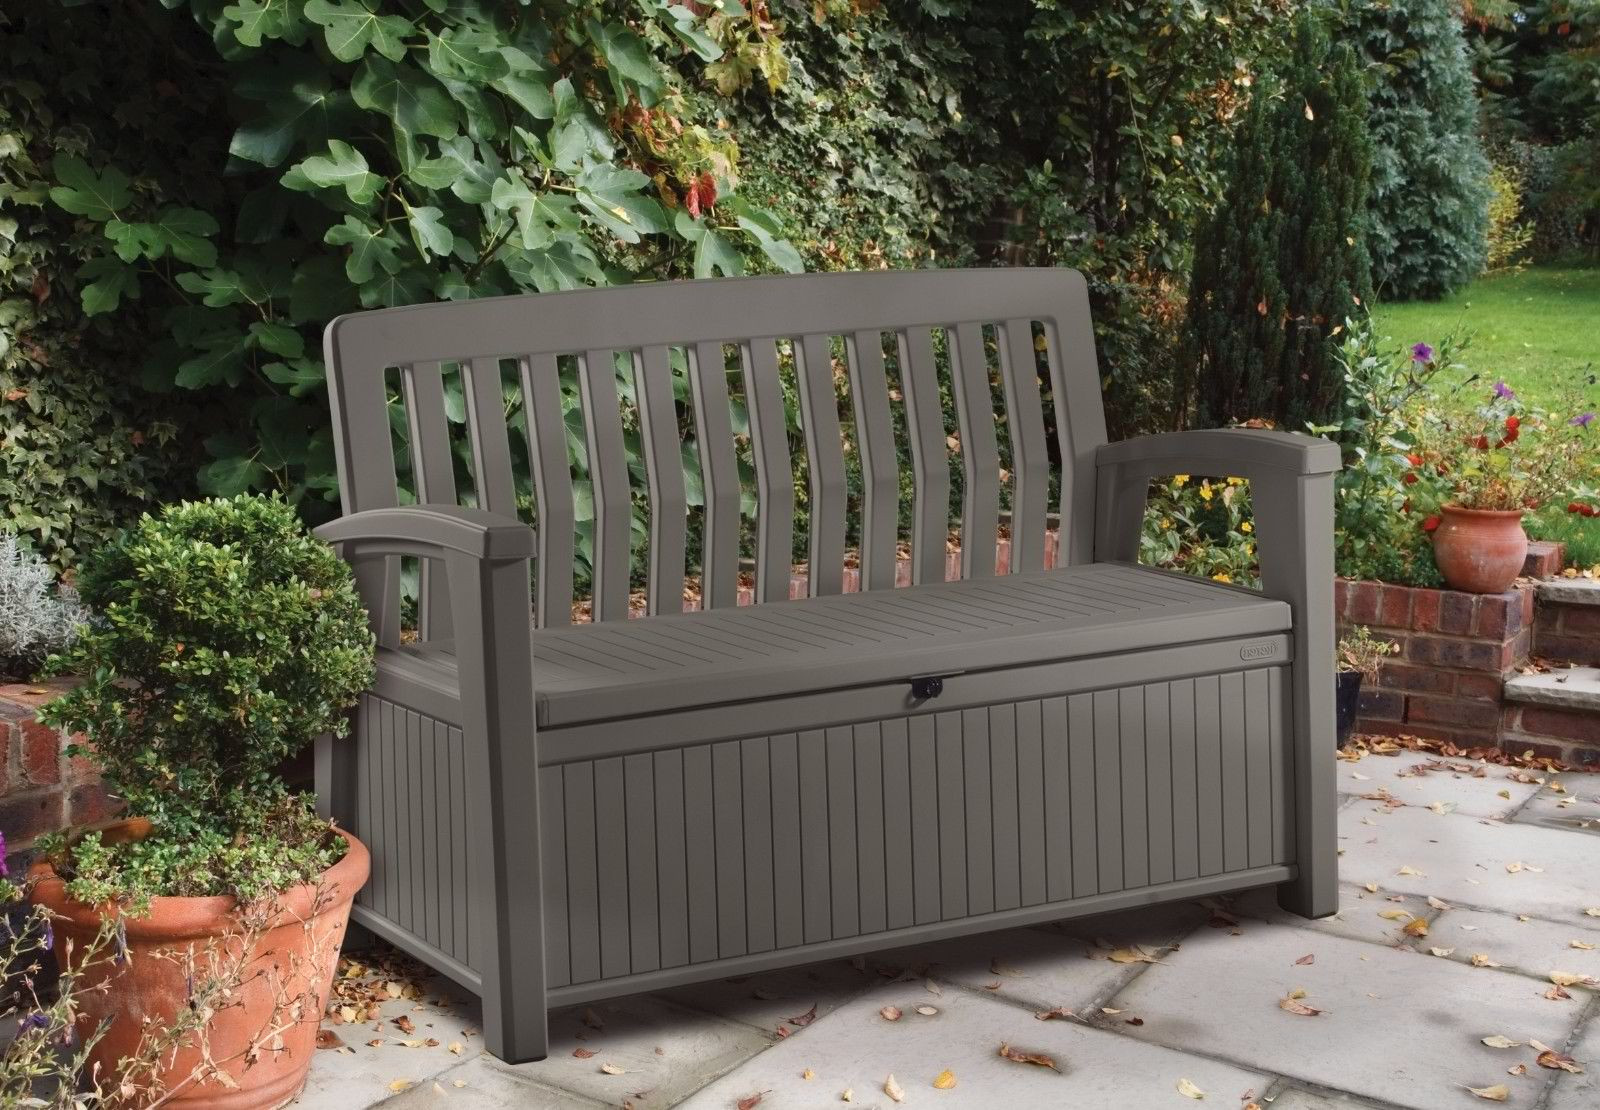 Keter Outdoor Storage Bench
 Patio Storage Bench Keter Outdoor Seat Garden Chair Box